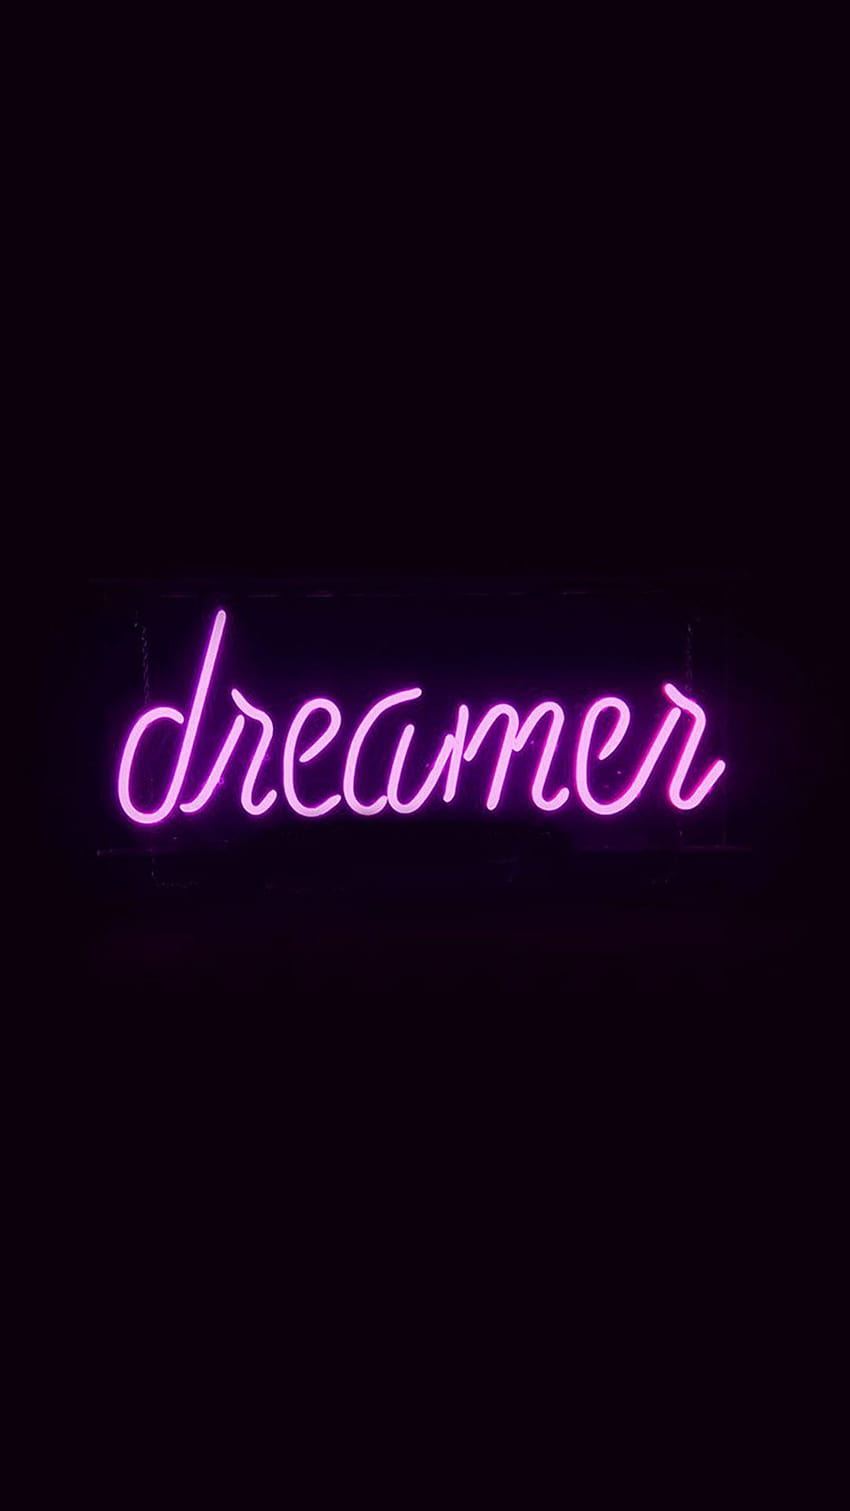 Dreamer in purple neon on black background - Purple